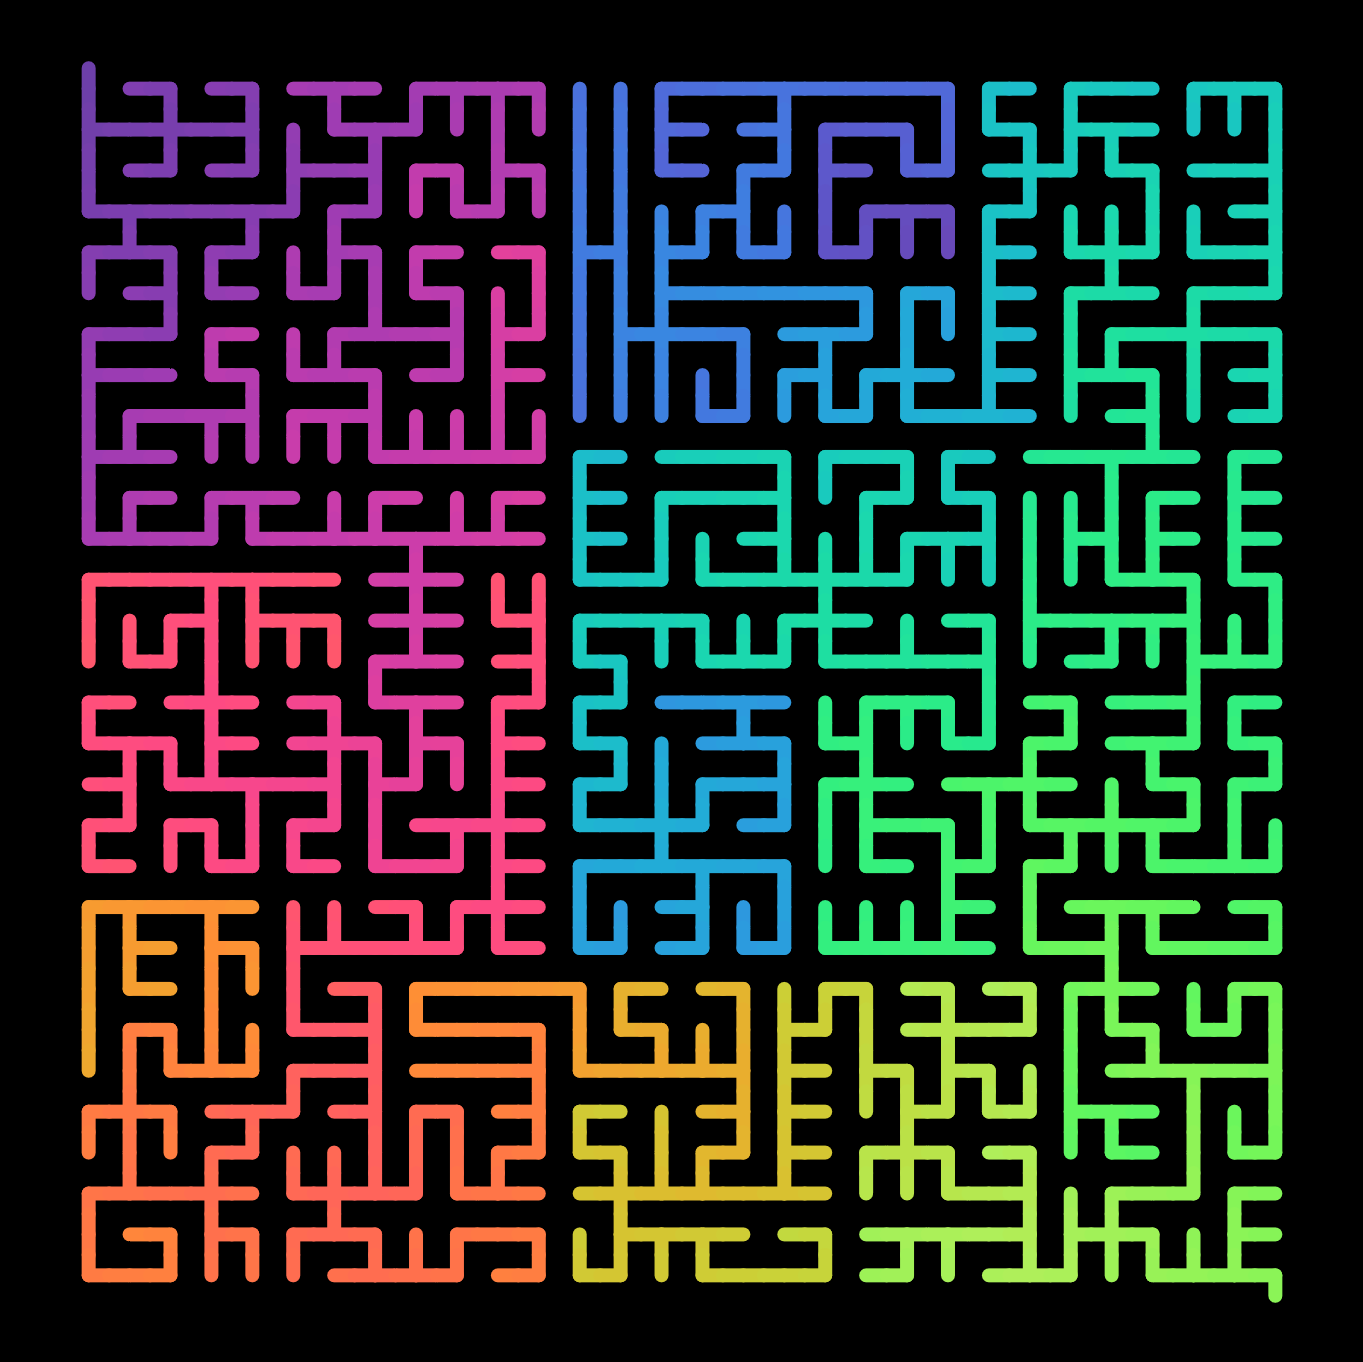 rainbow maze on black background (image)